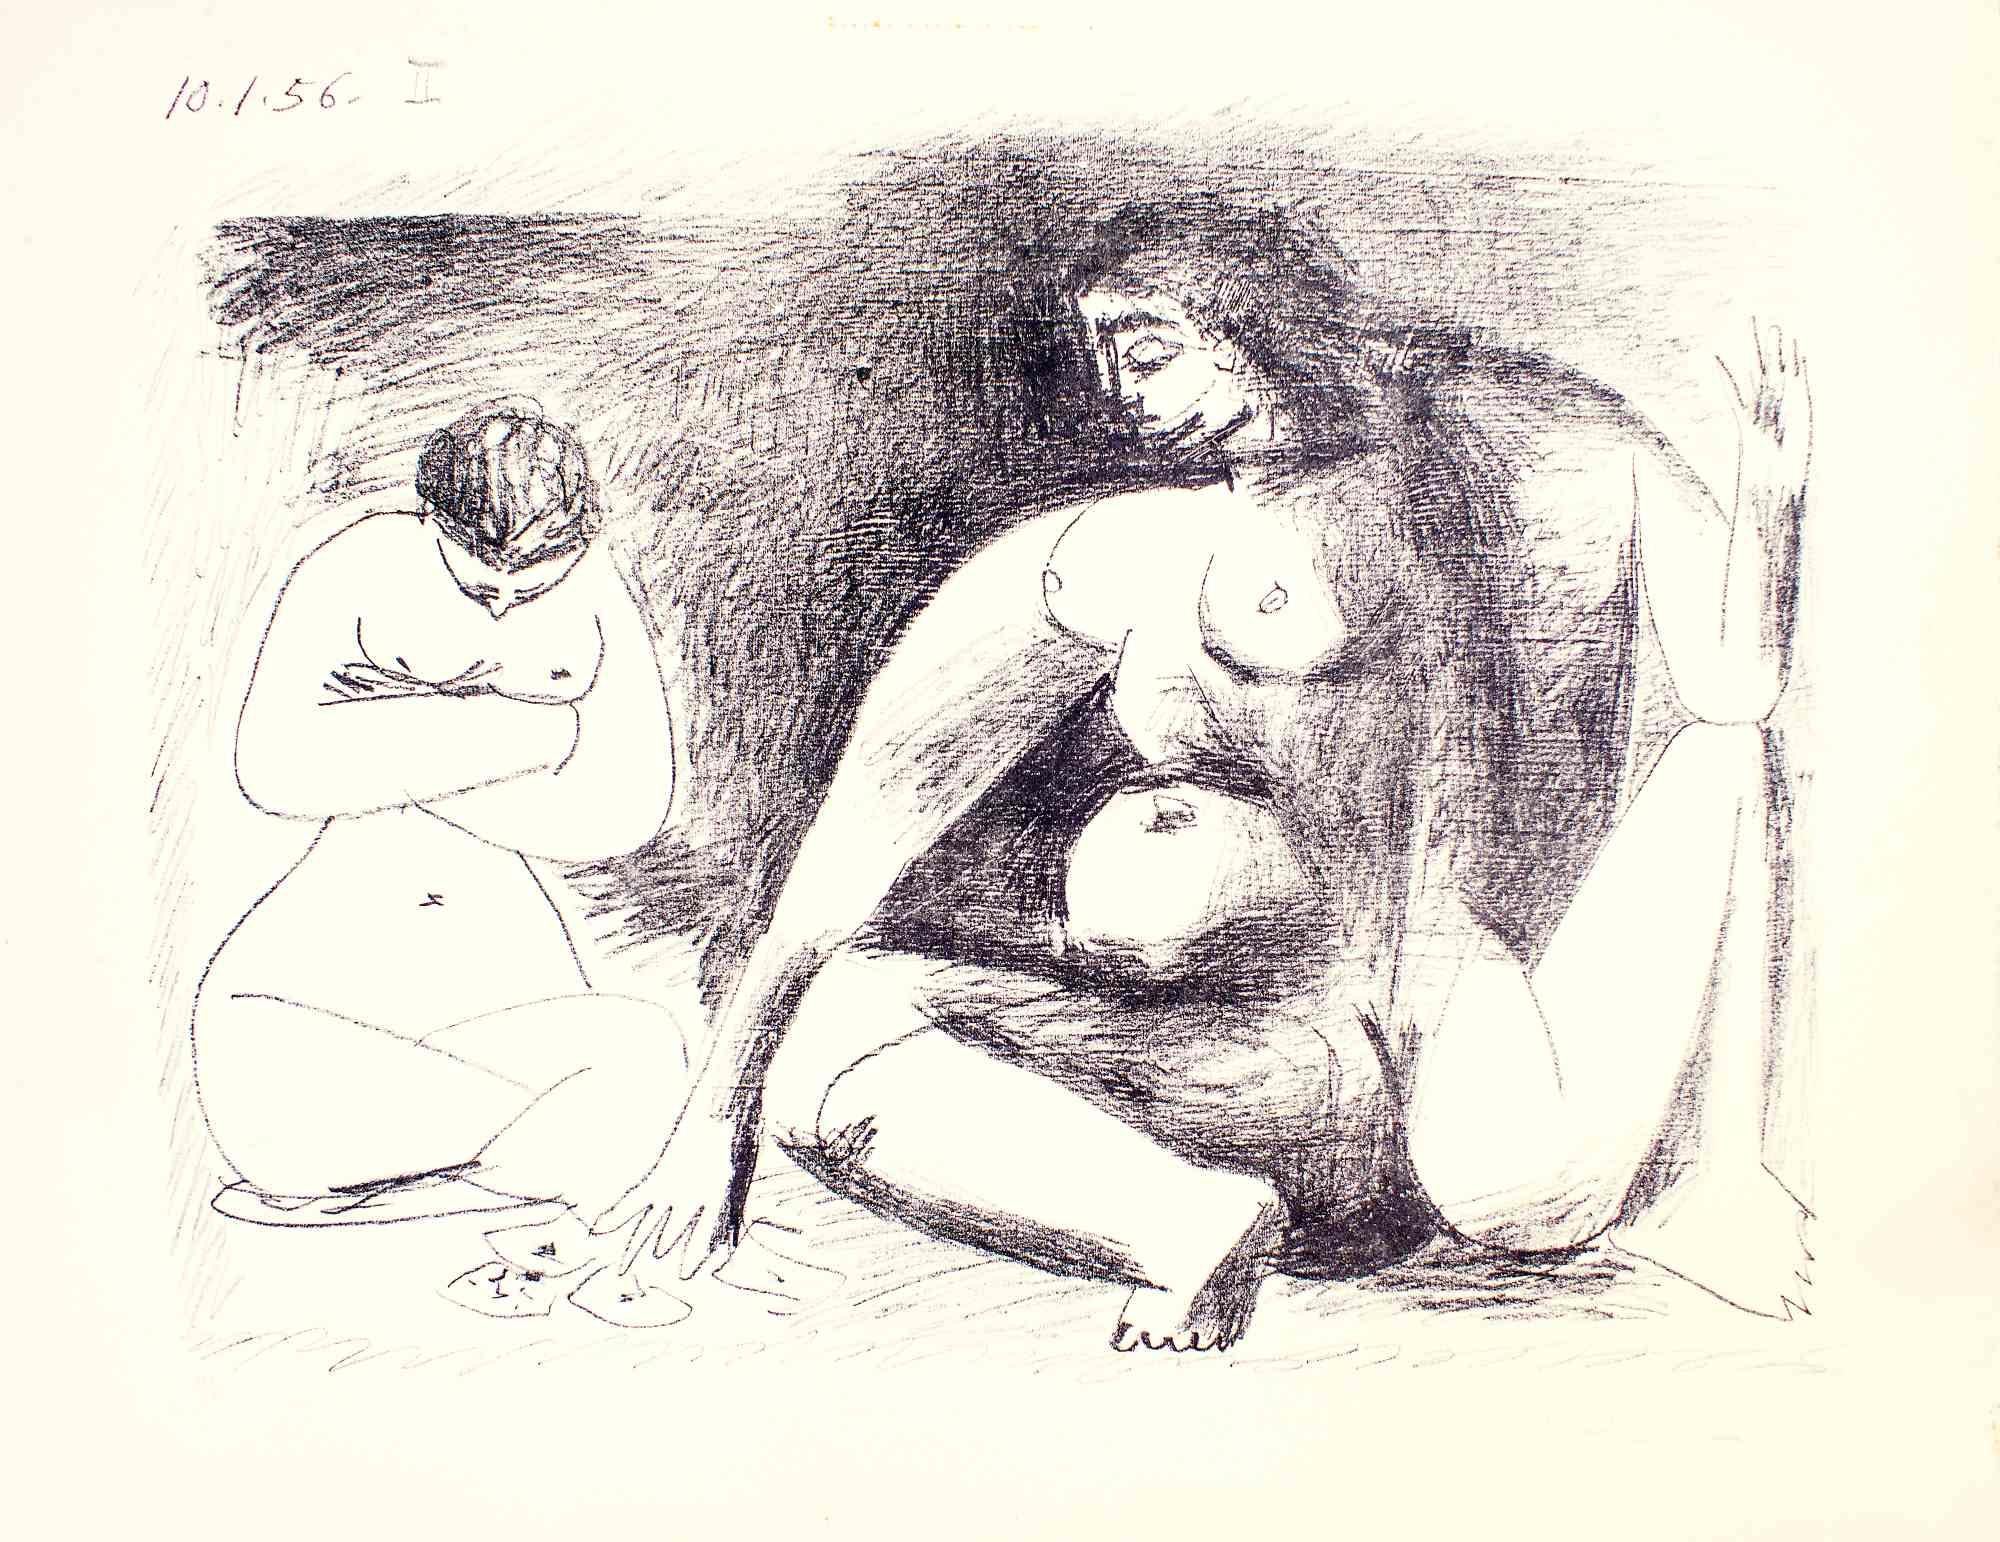 Realisiert von Picasso im Jahr 1956. Original-Lithographie. 
Handsigniert und nummeriert.
Auflage: 50 Exemplare. 
Referenz Bloch n.790. 